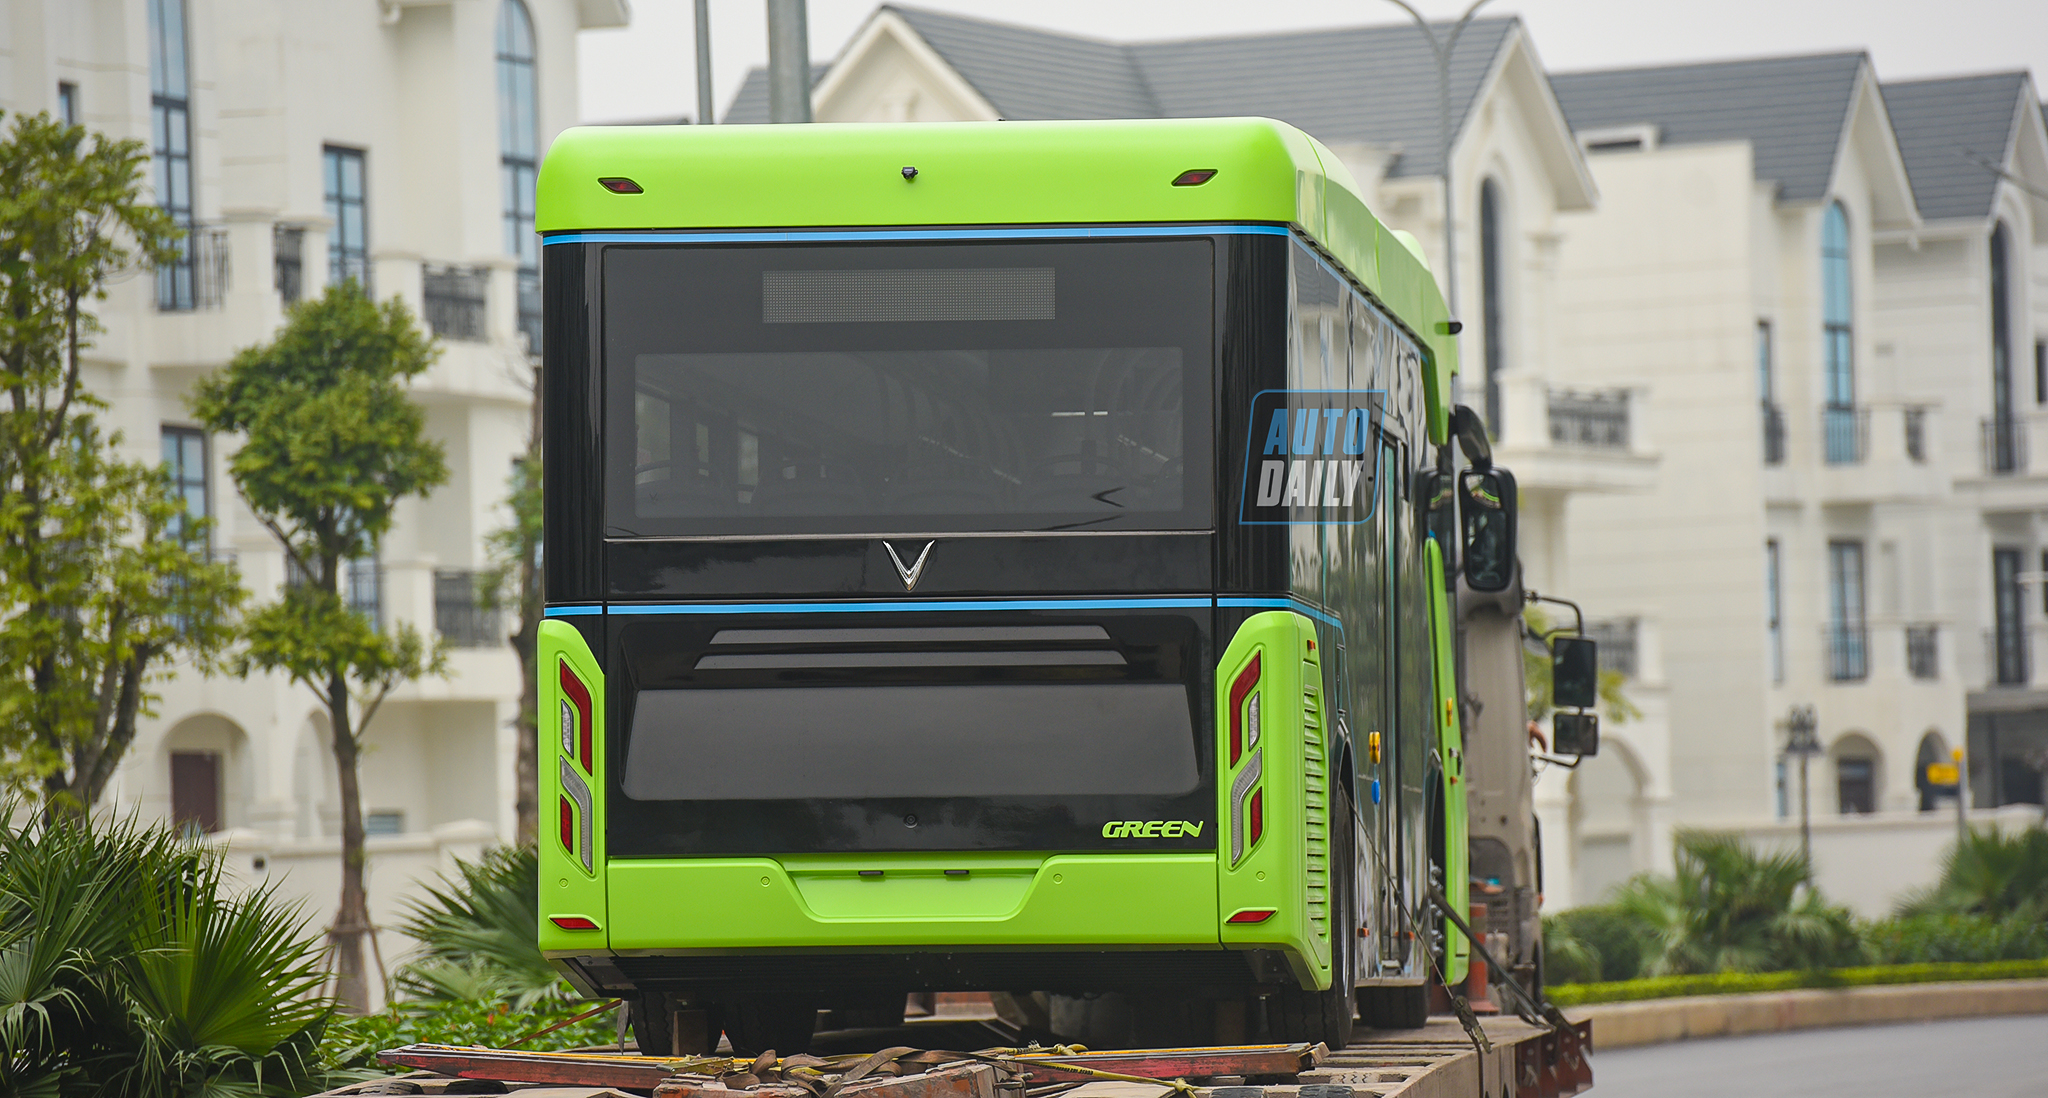 Chùm ảnh loạt xe Bus điện VinFast có mặt tại Hà Nội, sẵn sàng chạy thí điểm dsc-3901-copy.jpg